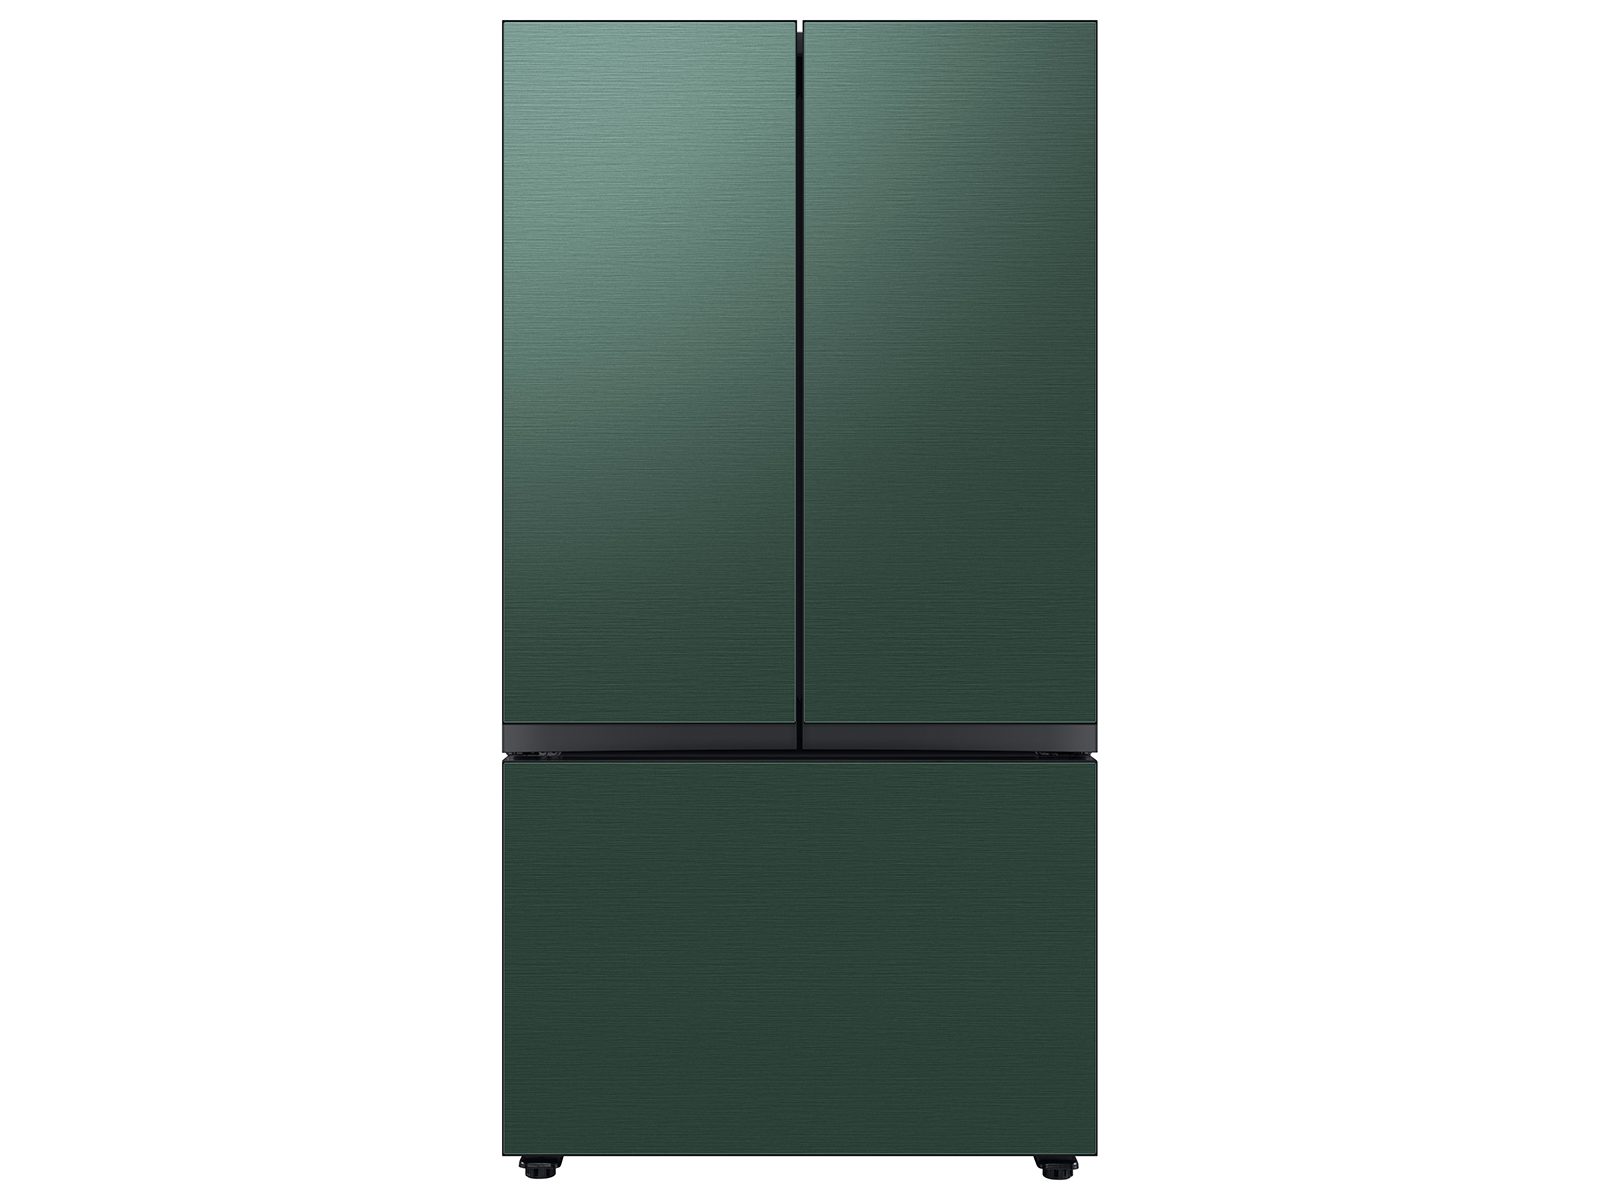 Bespoke 3-Door French Door Refrigerator (24 cu. ft.) with Beverage Center&trade; in Emerald Green Steel